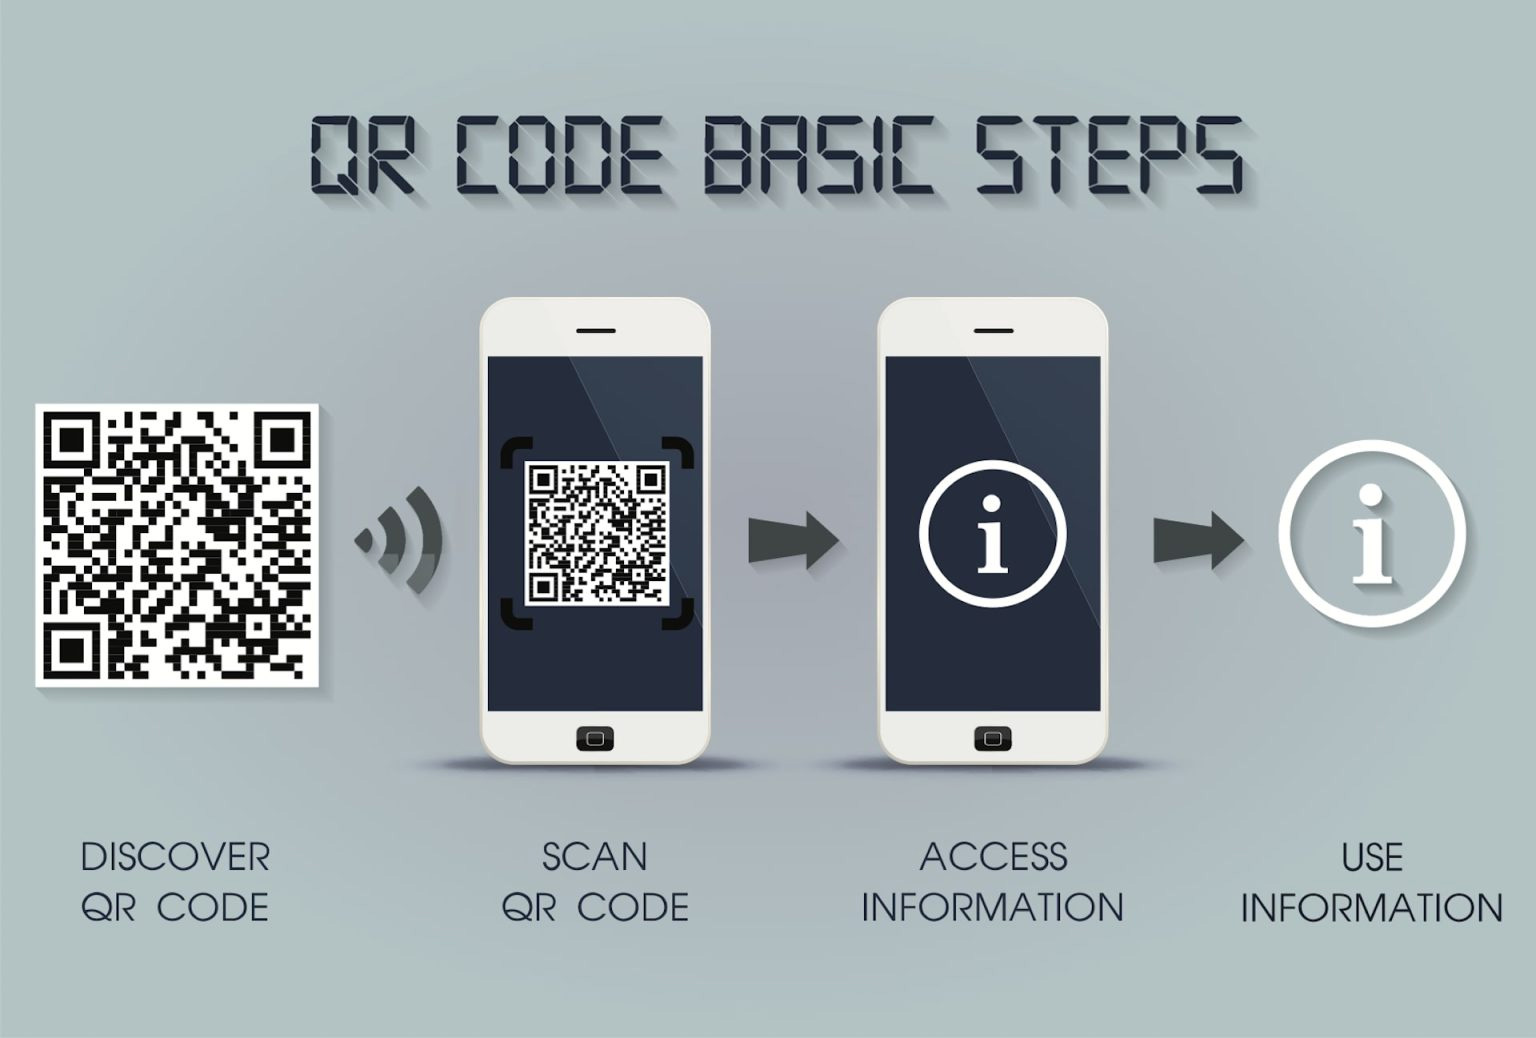 پروسه اجرای کیو آر کد - ساخت qr code